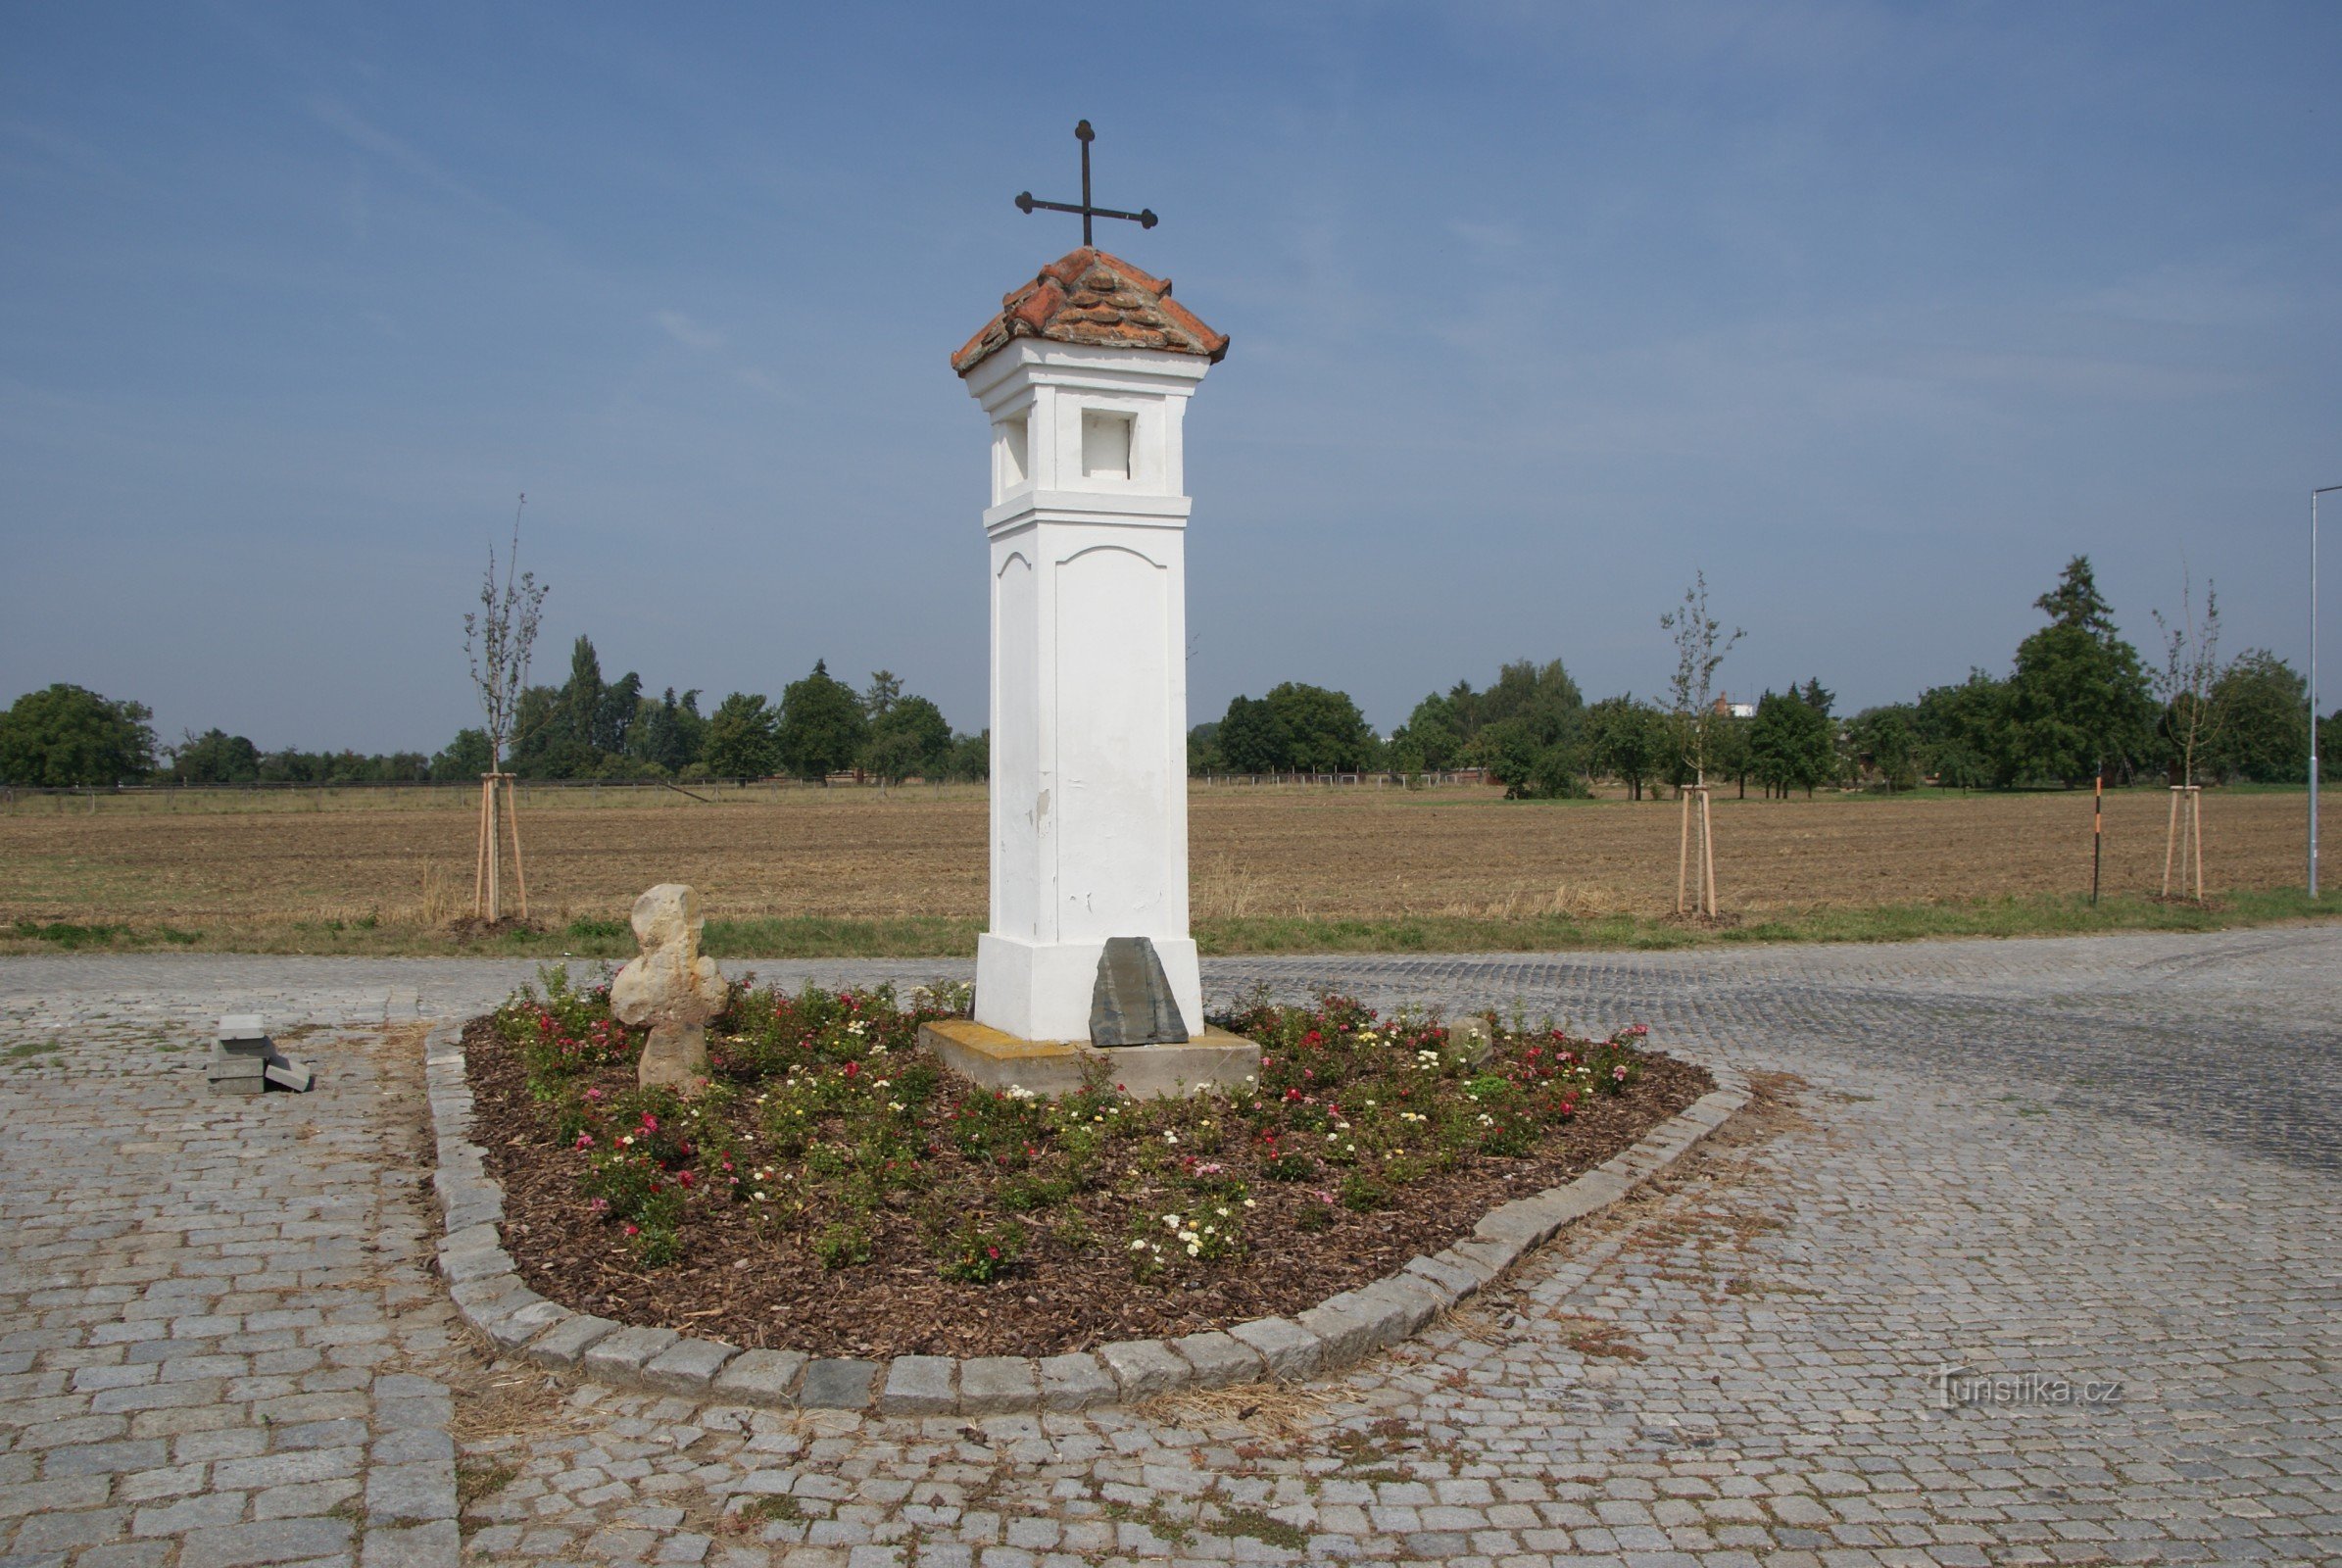 Đơn hàng (gần Olomouc) - chữ thập hòa bình "mới" ở quy mô nông nghiệp